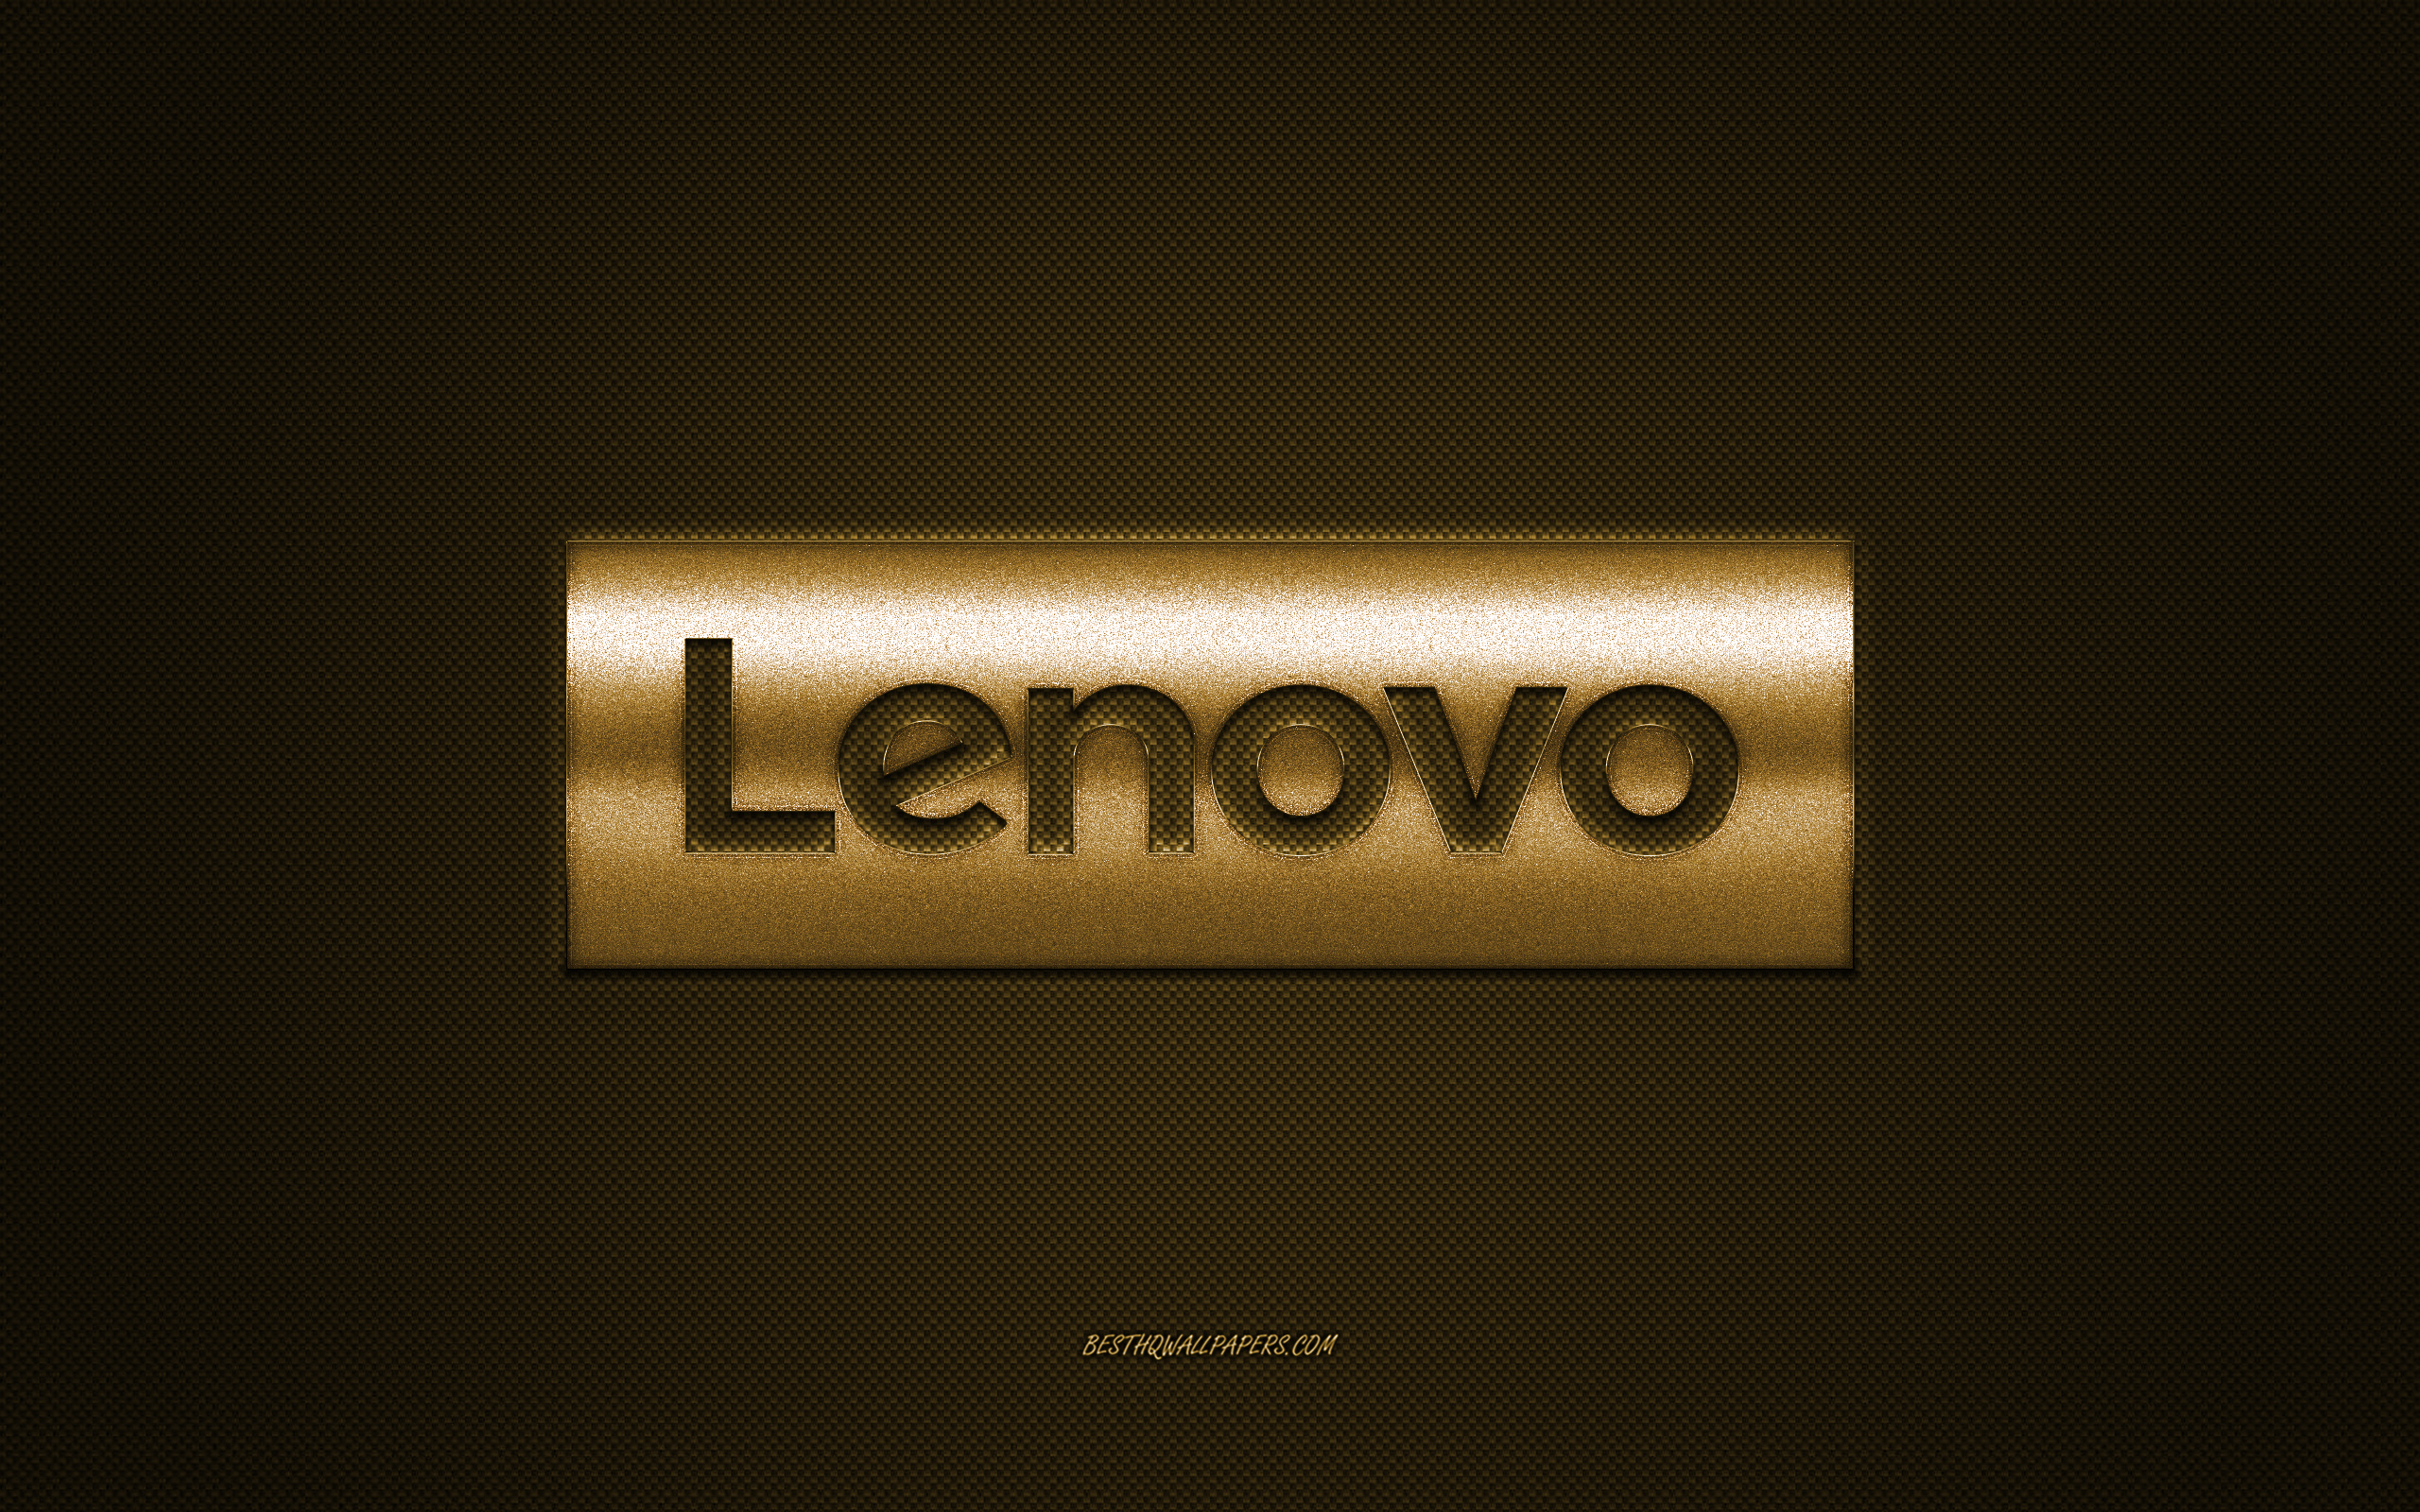 ダウンロード画像 レノボ 金色グリッターロゴ 壁紙用ノデバイス レノボのロゴ 炭素繊維の背景 クリエイティブ アート 大lenovoロゴ 画面の解像度 2560x1600 壁紙デスクトップ上